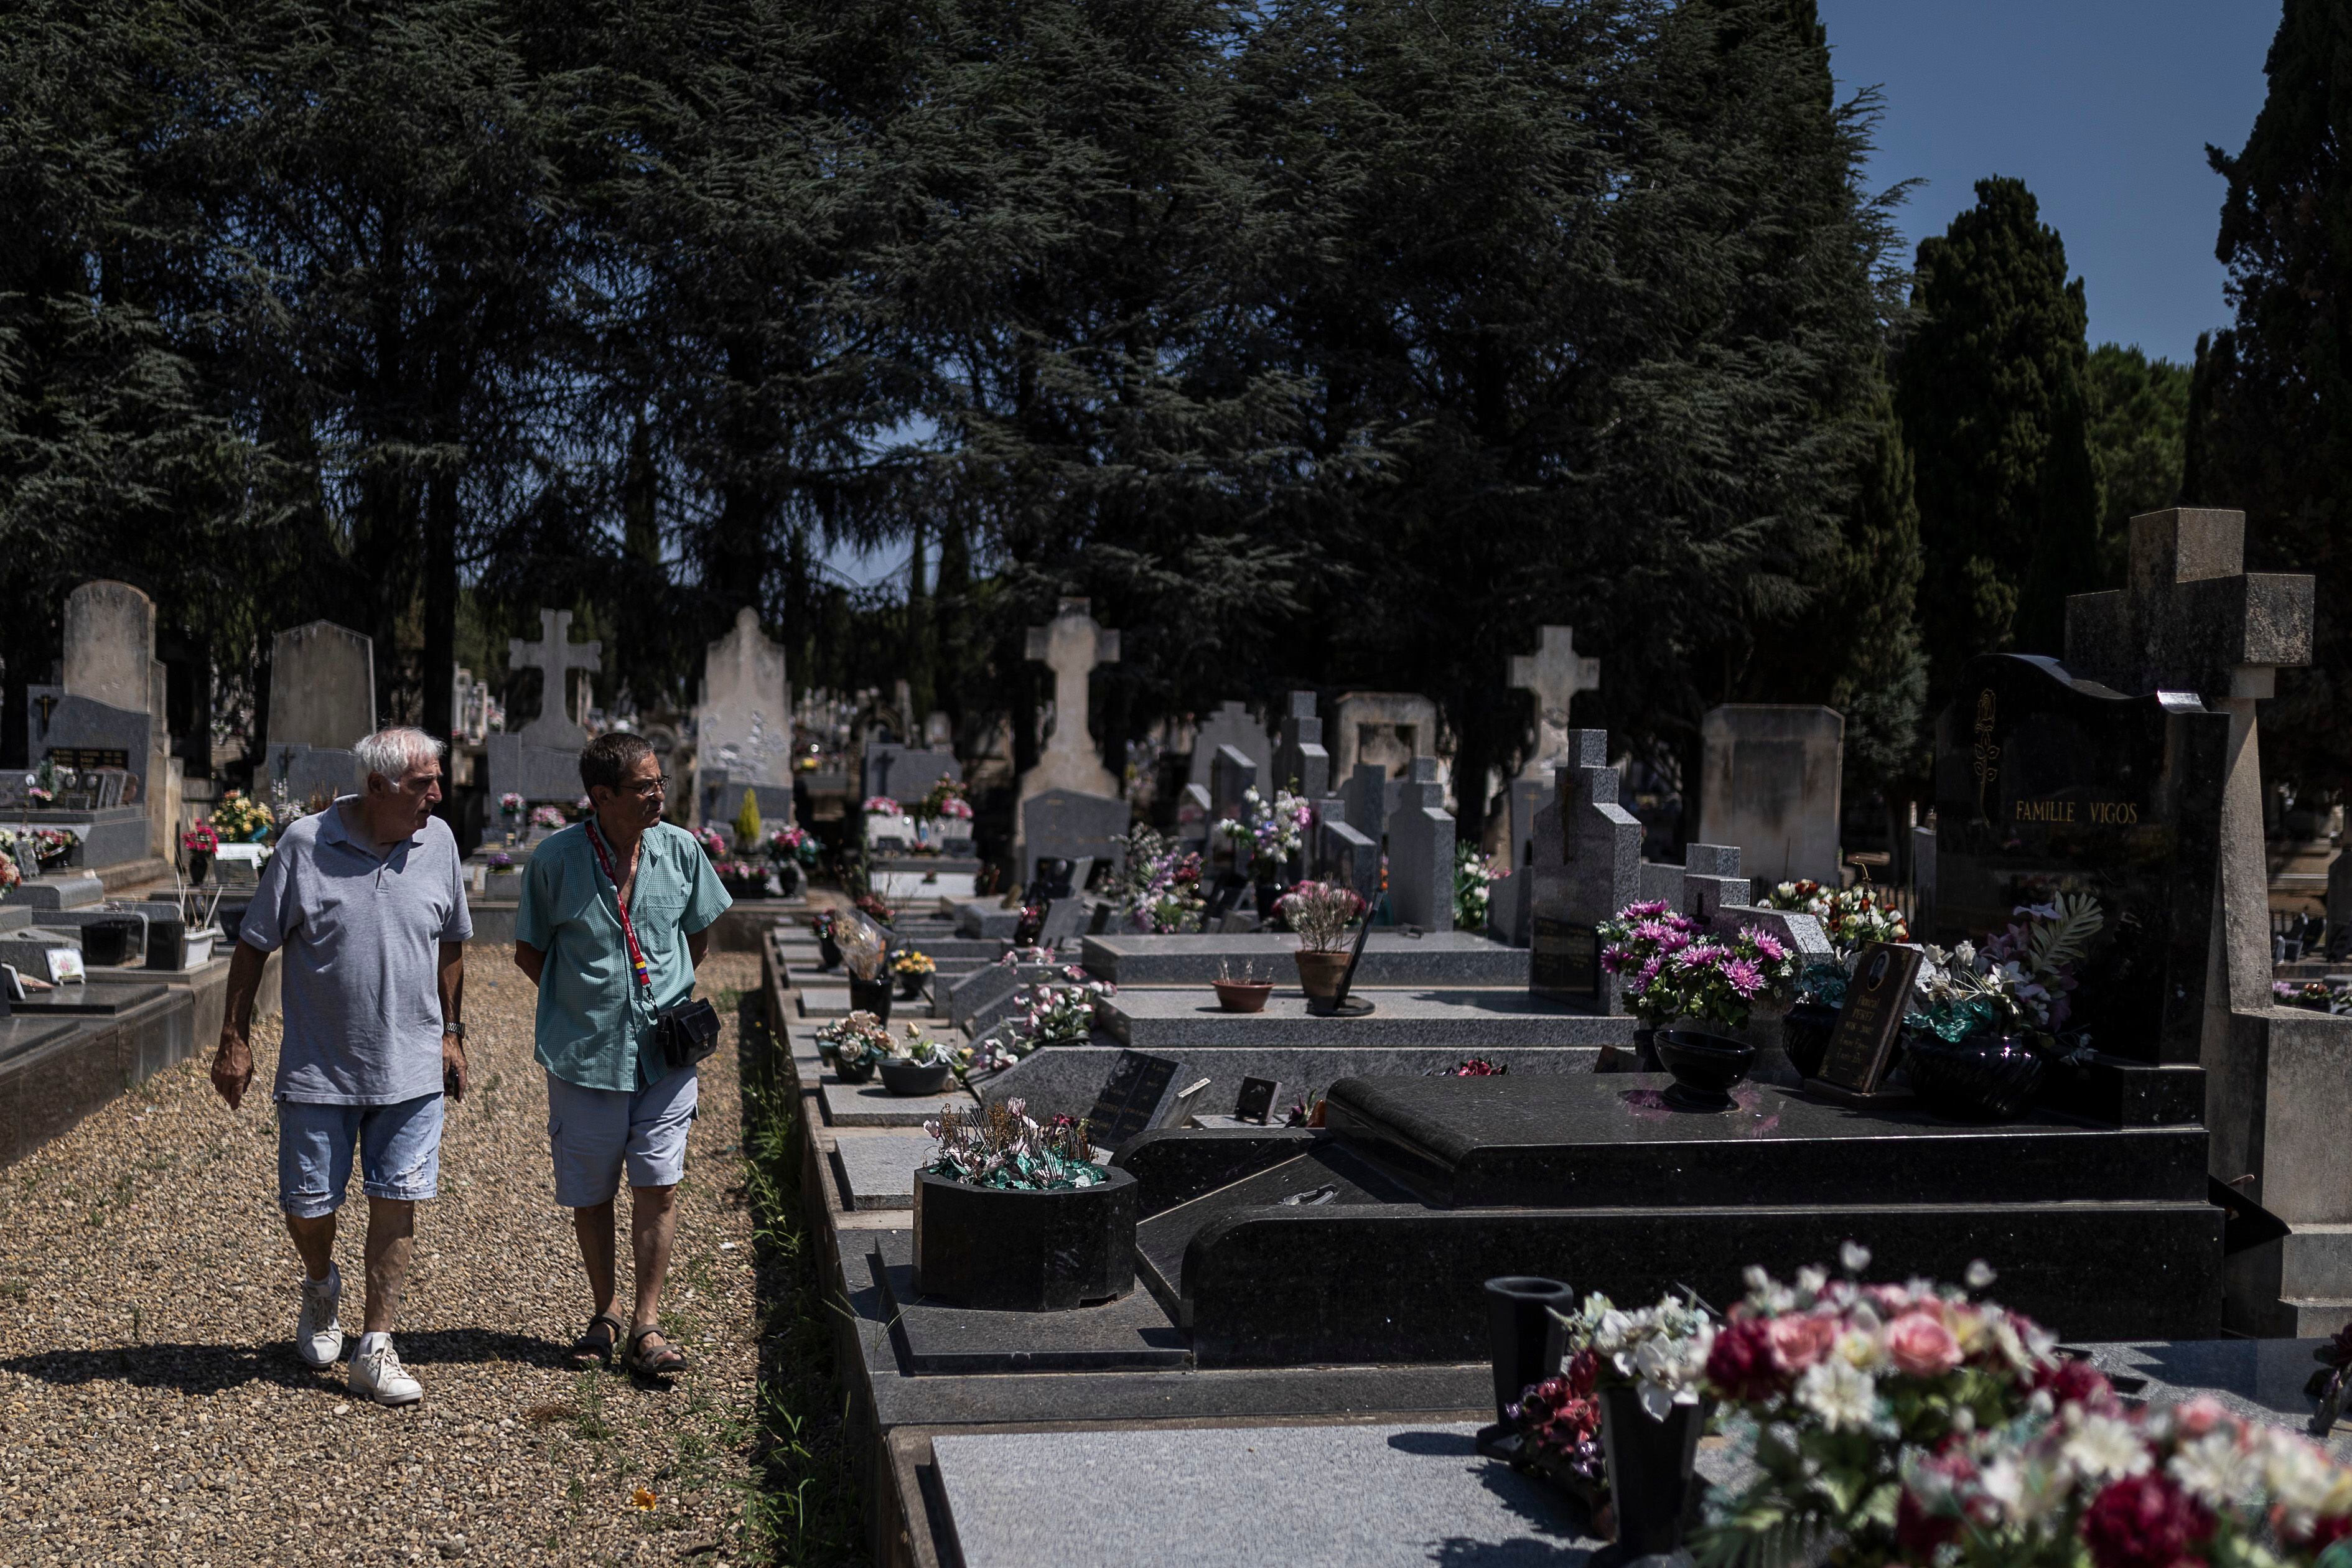 Pepito y Alain, hijo y sobrino de Ana Garbín Alonso, respectivamente, visitan la tumba familiar donde esta enterrada la miliciana, en el cementerio nuevo de Béziers.  